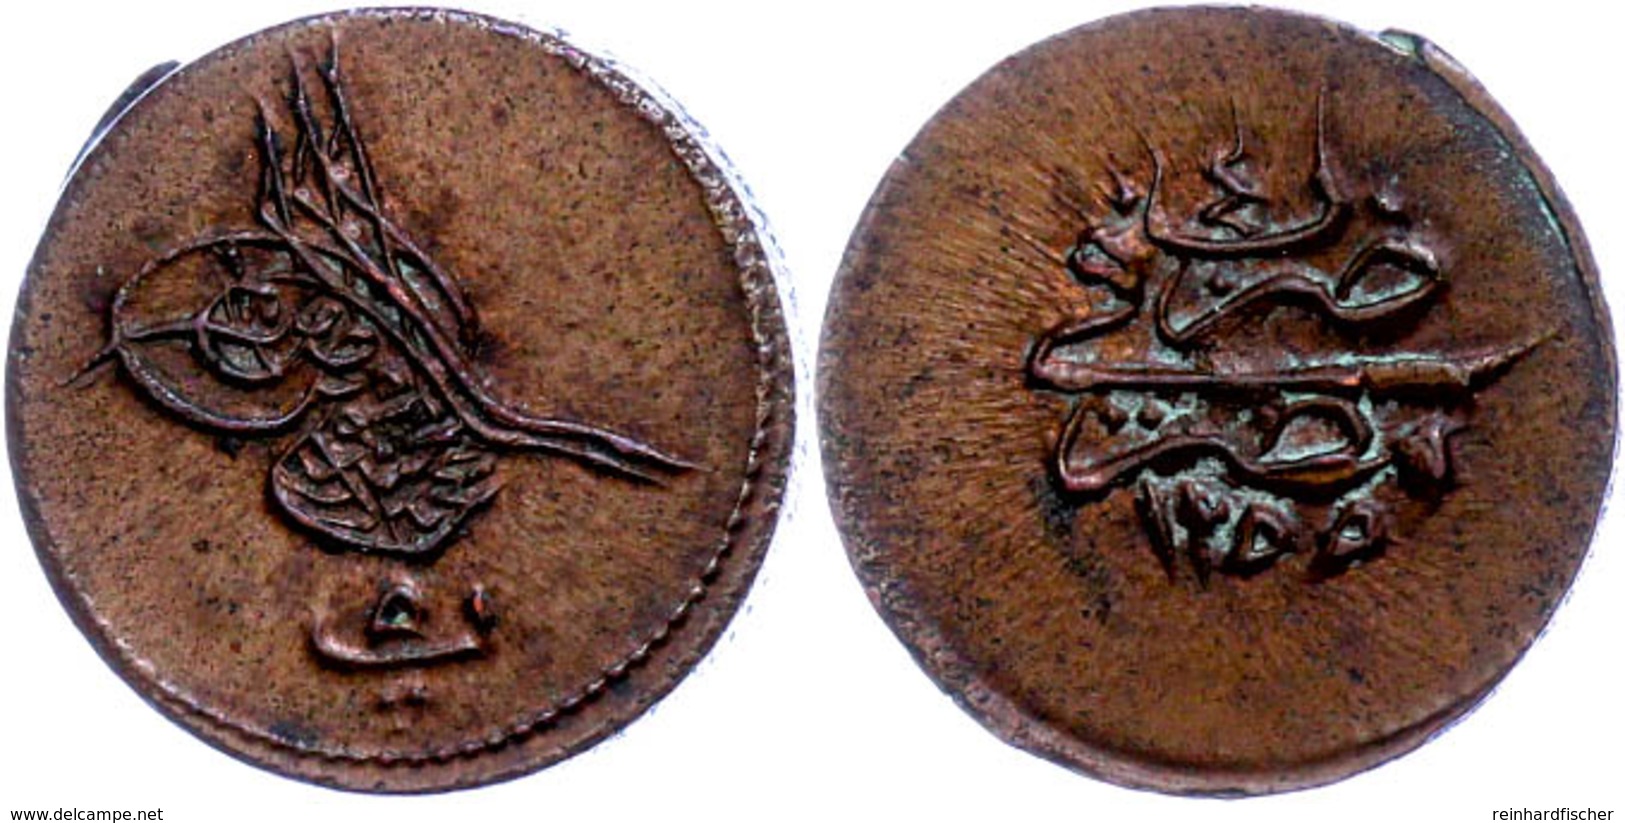 5 Para, AH 1255/4, Abdülmecid, Misir, KM 222 (Ägypten), St.  St - Oriental